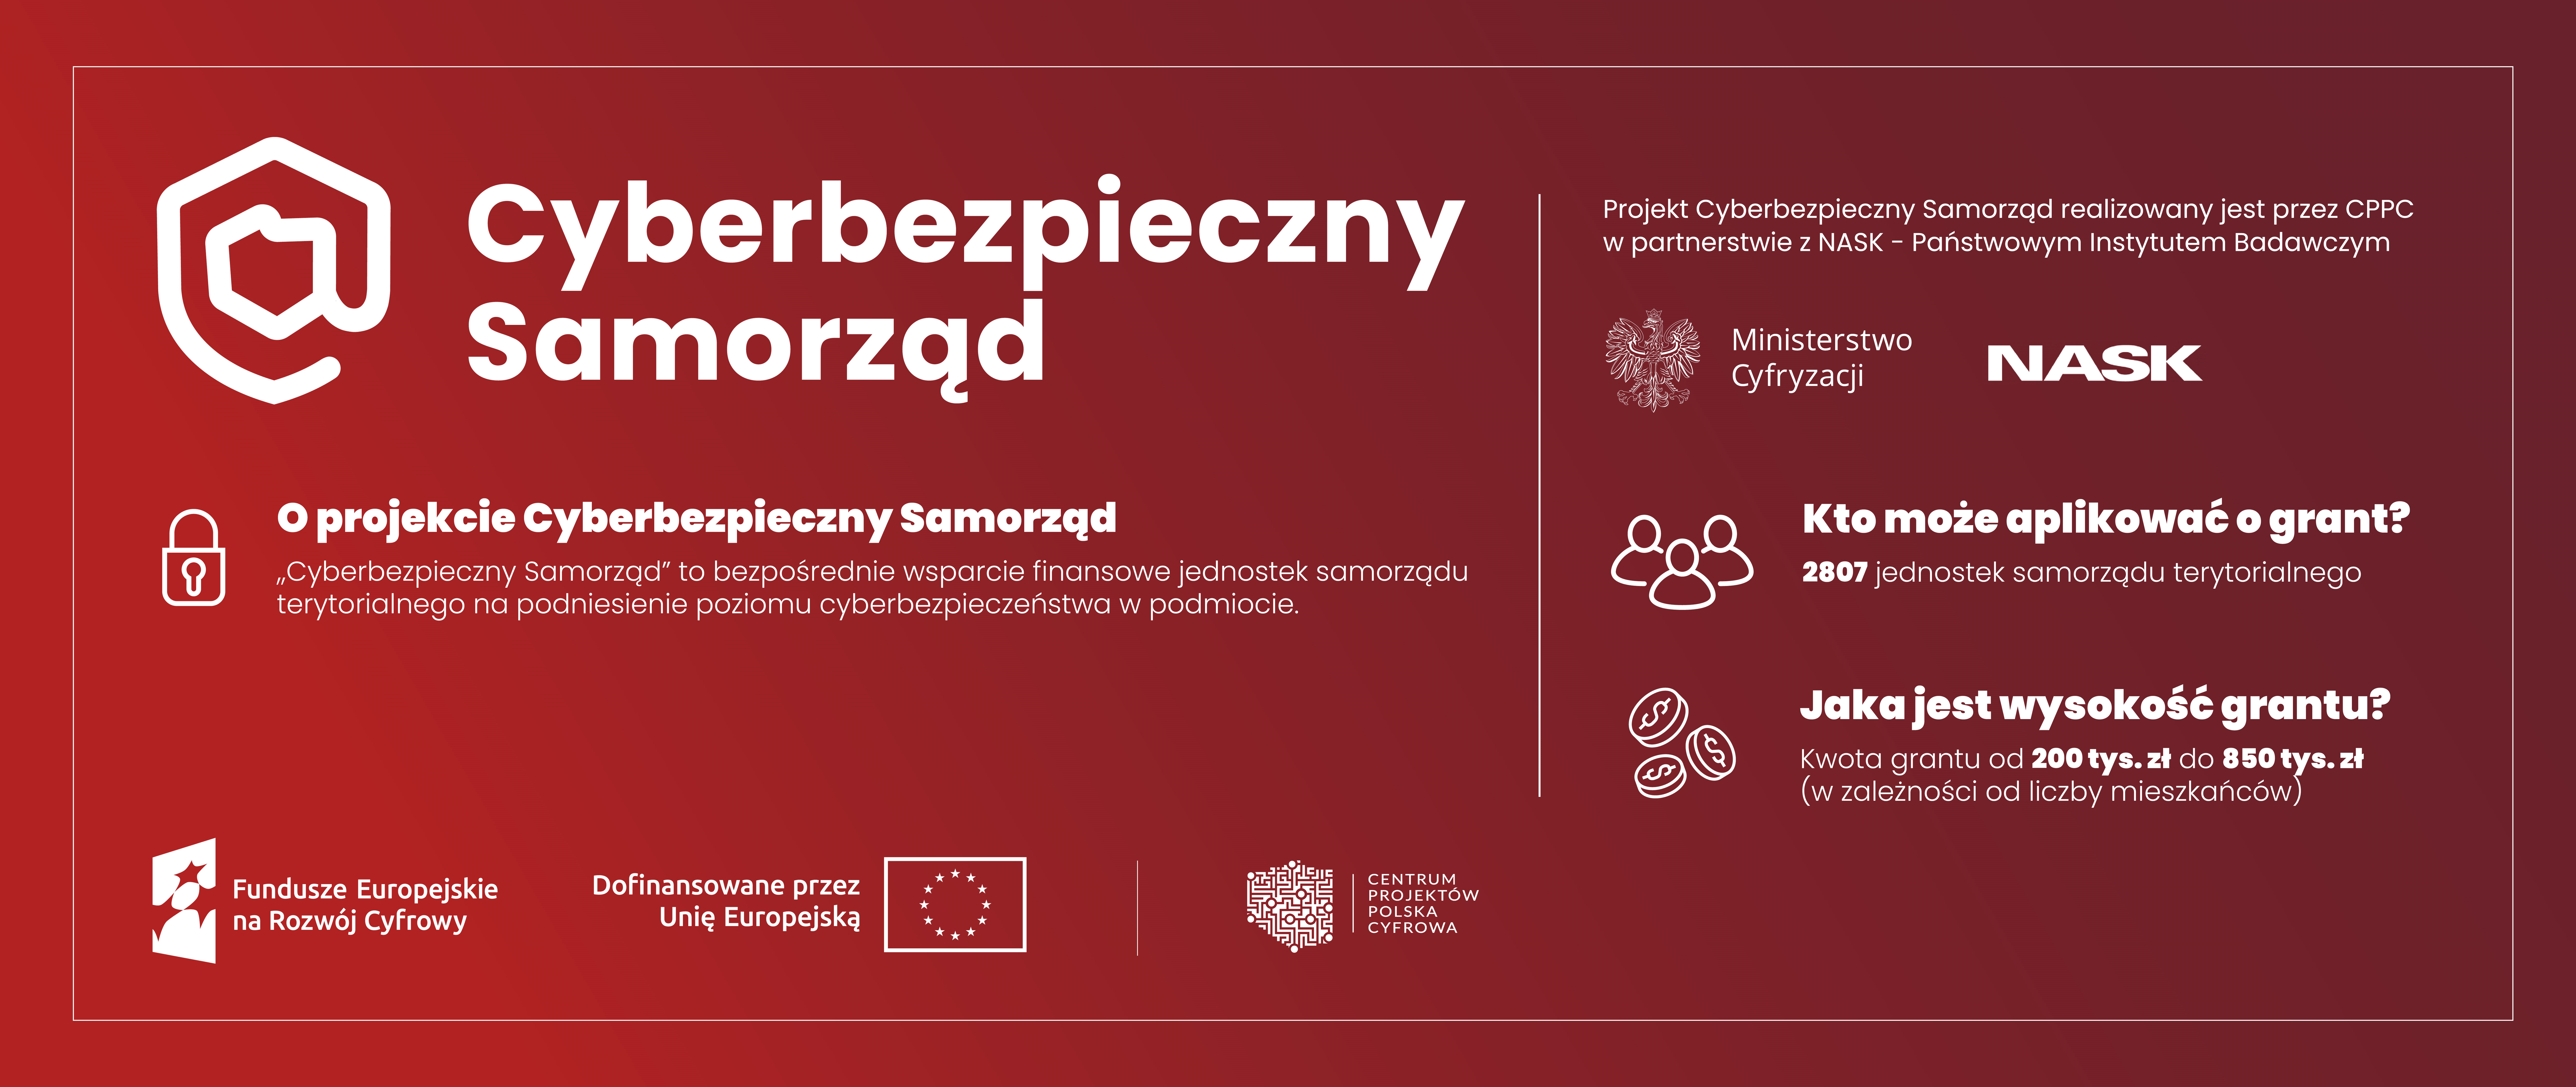 Gmina Sztabin podpisała umowę w ramach projektu Cyberbezpieczny Samorząd
Projekt realizowany będ...